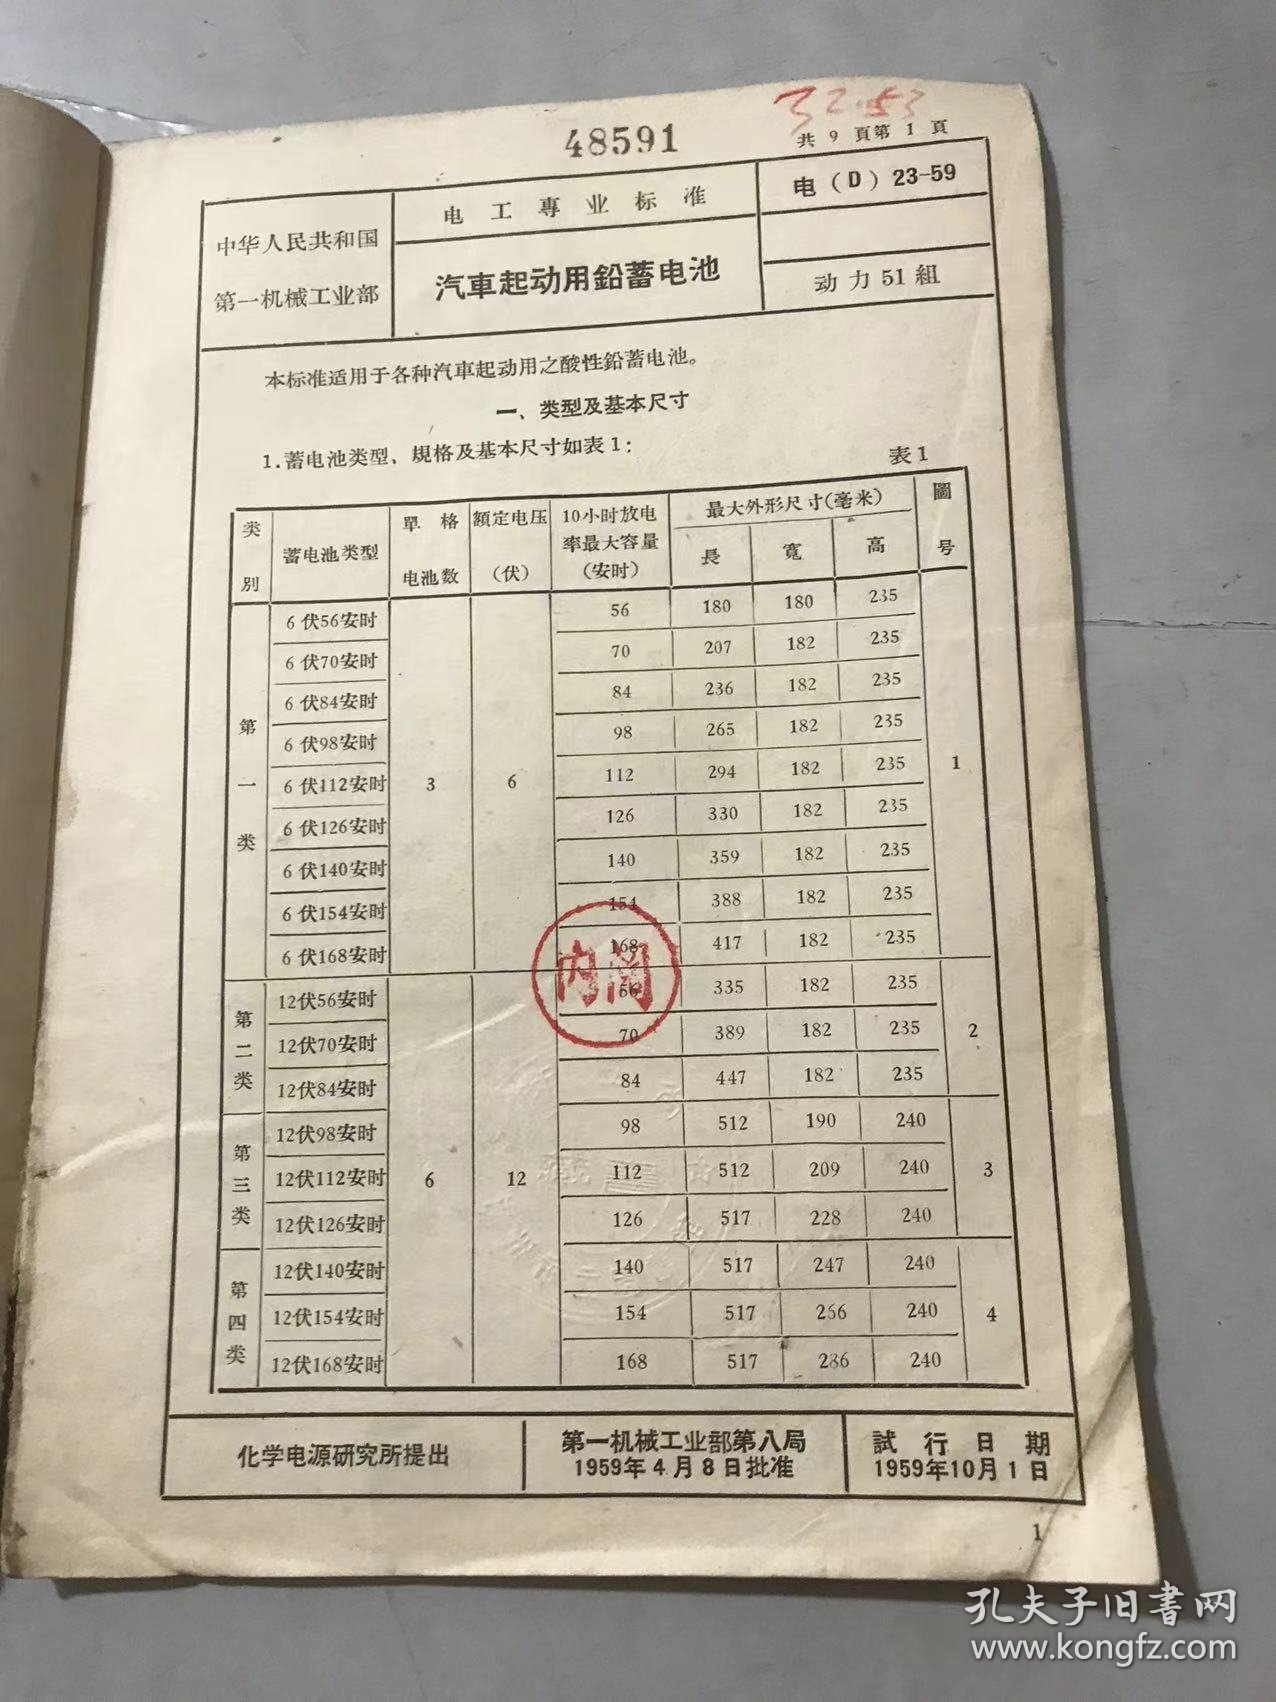 中华人民共和国第一机械工业部电工专业标准（草案试行）《汽车起动用铅蓄电池 电（D）23-59》。